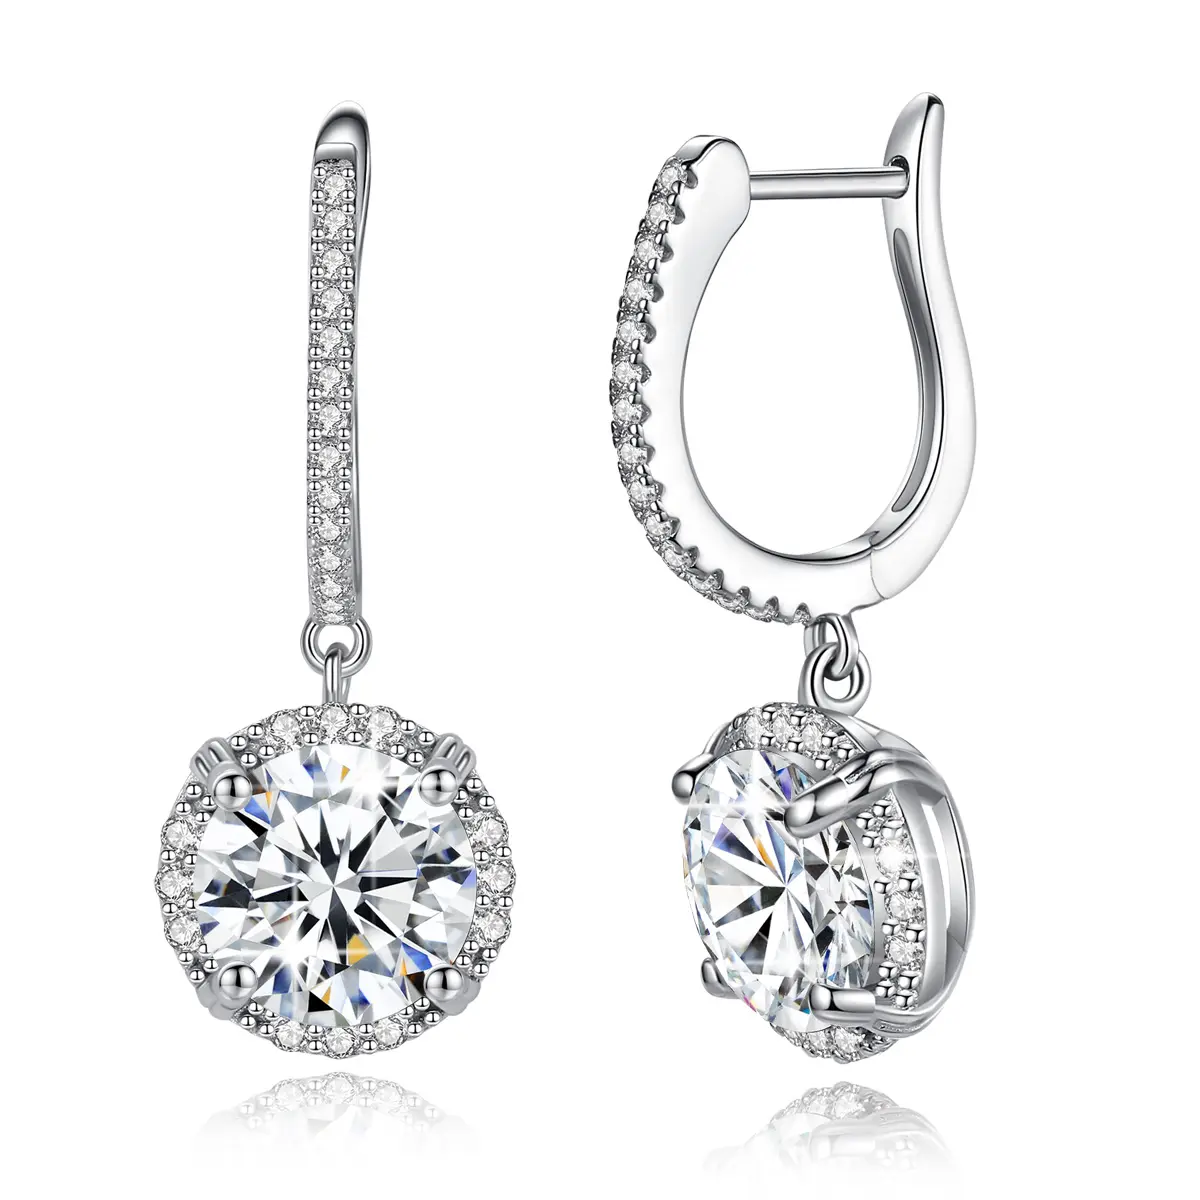 SZJINAO Women 8mm D Moissanite Real 925 Sterling Silver Earrings Jewelry Luxury 2ct Real Diamond 18K White Gold Drop Earring